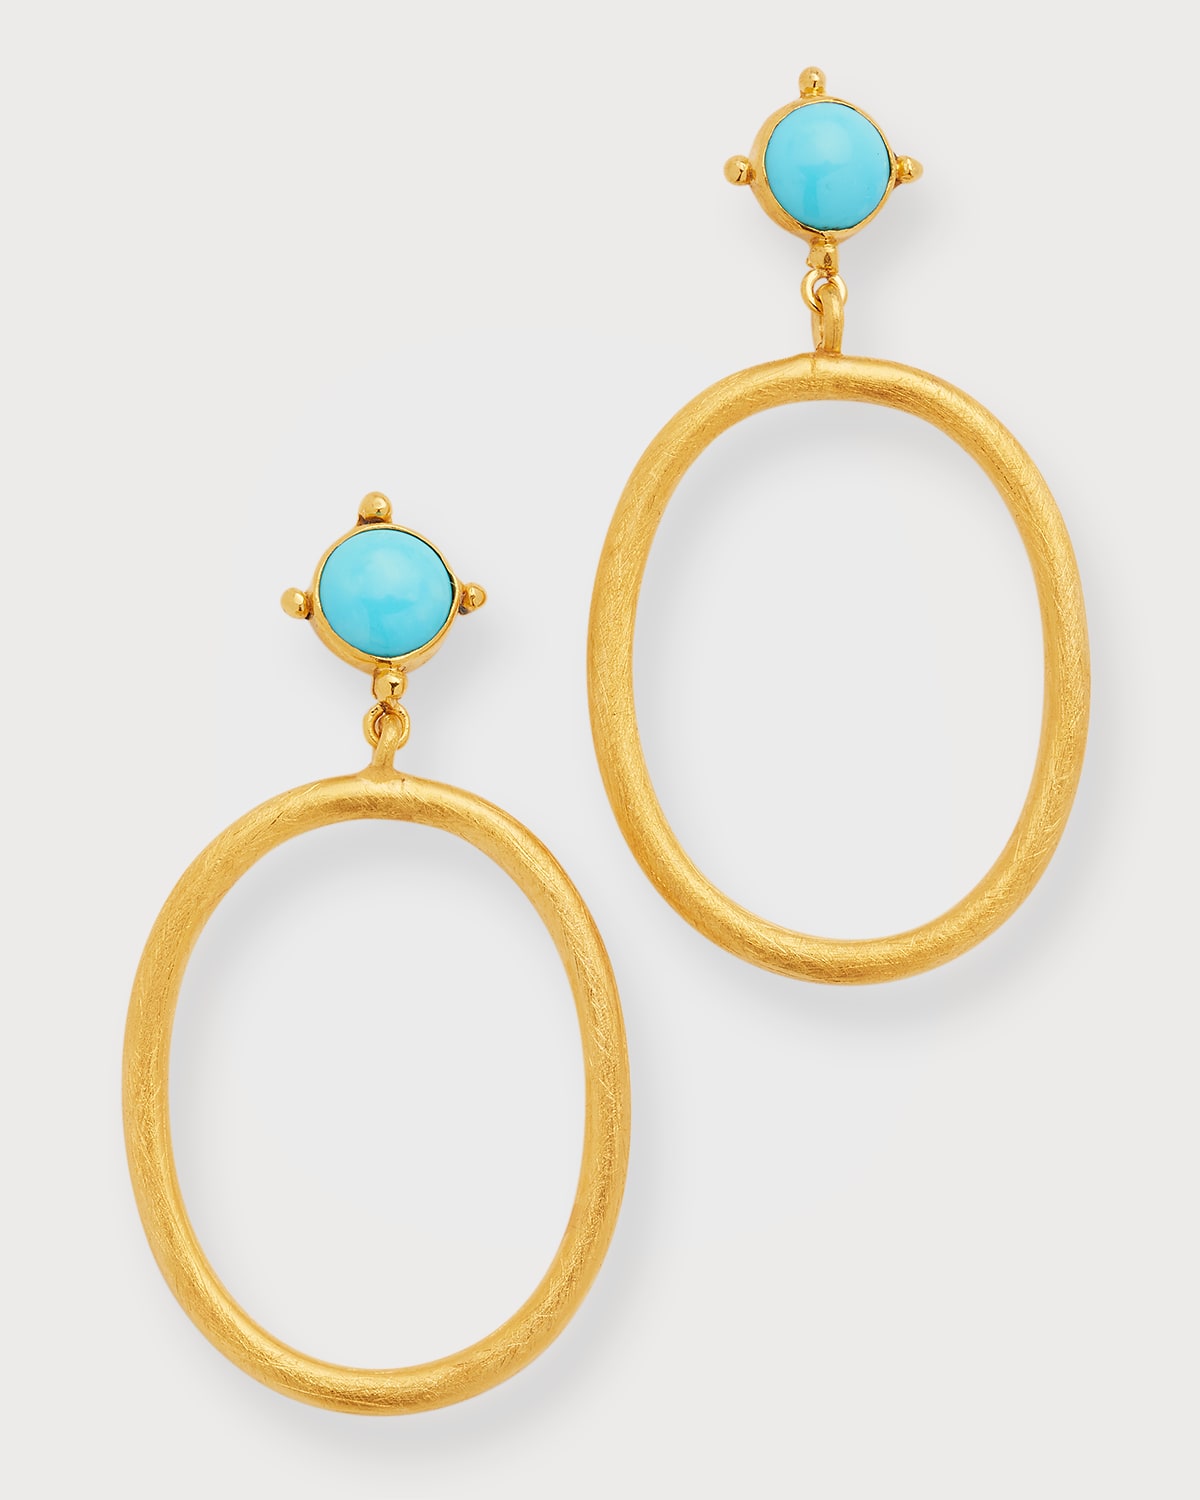 Dina Mackney Gem Hoop Earrings in Turquoise